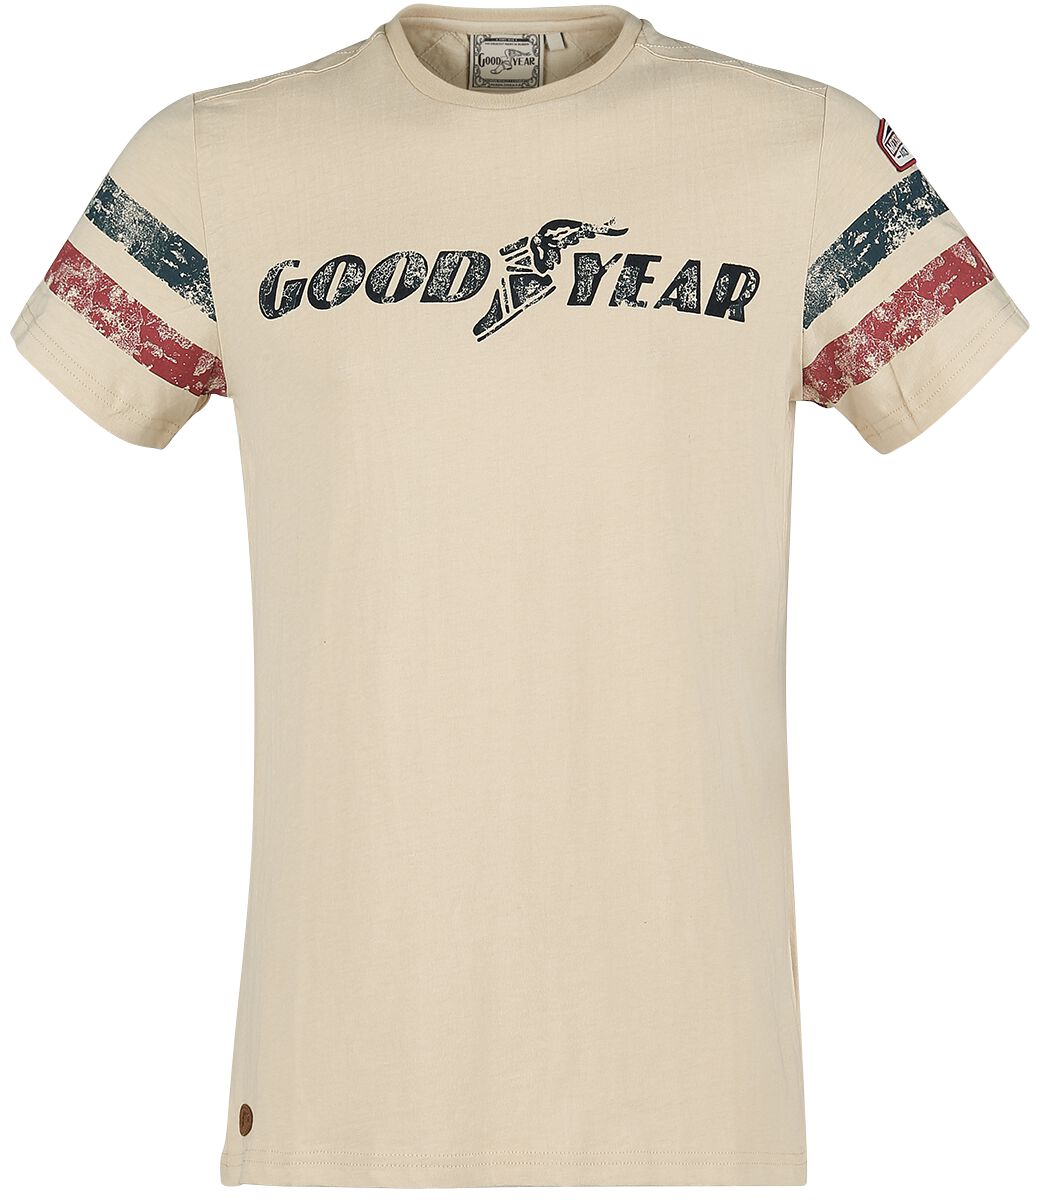 Goodyear Grand Bend Männer T-shirt Beige